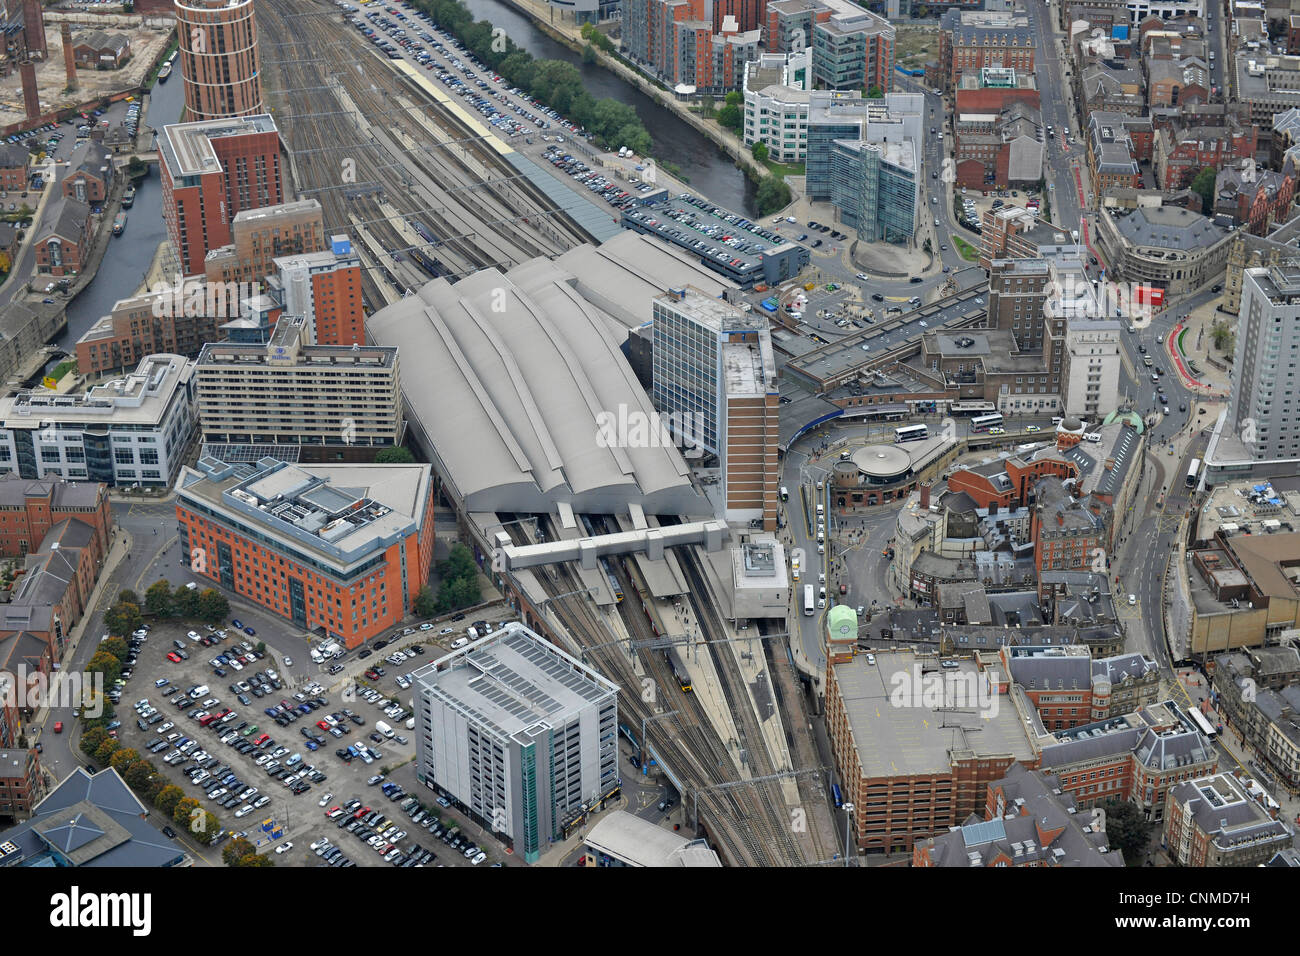 Luftaufnahme zeigt Bahnhof Leeds und der näheren Umgebung. Stockfoto